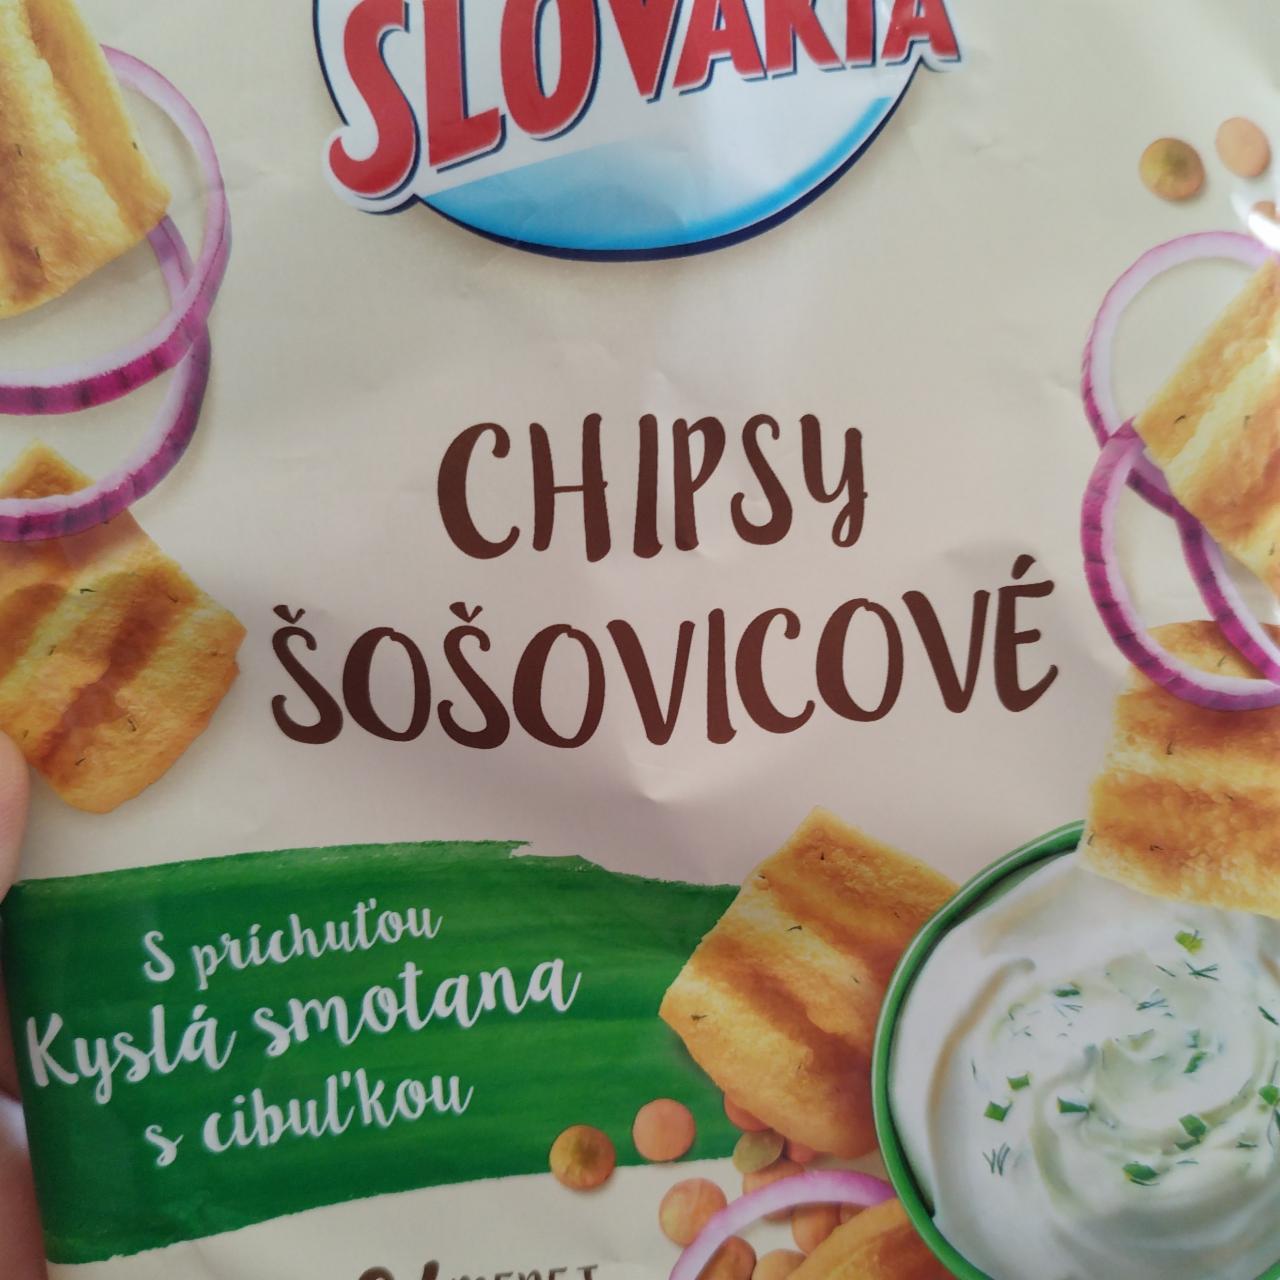 Фото - Chipsy šošovicove s prichuťou kyslá smotana s cibuľou Slovakia